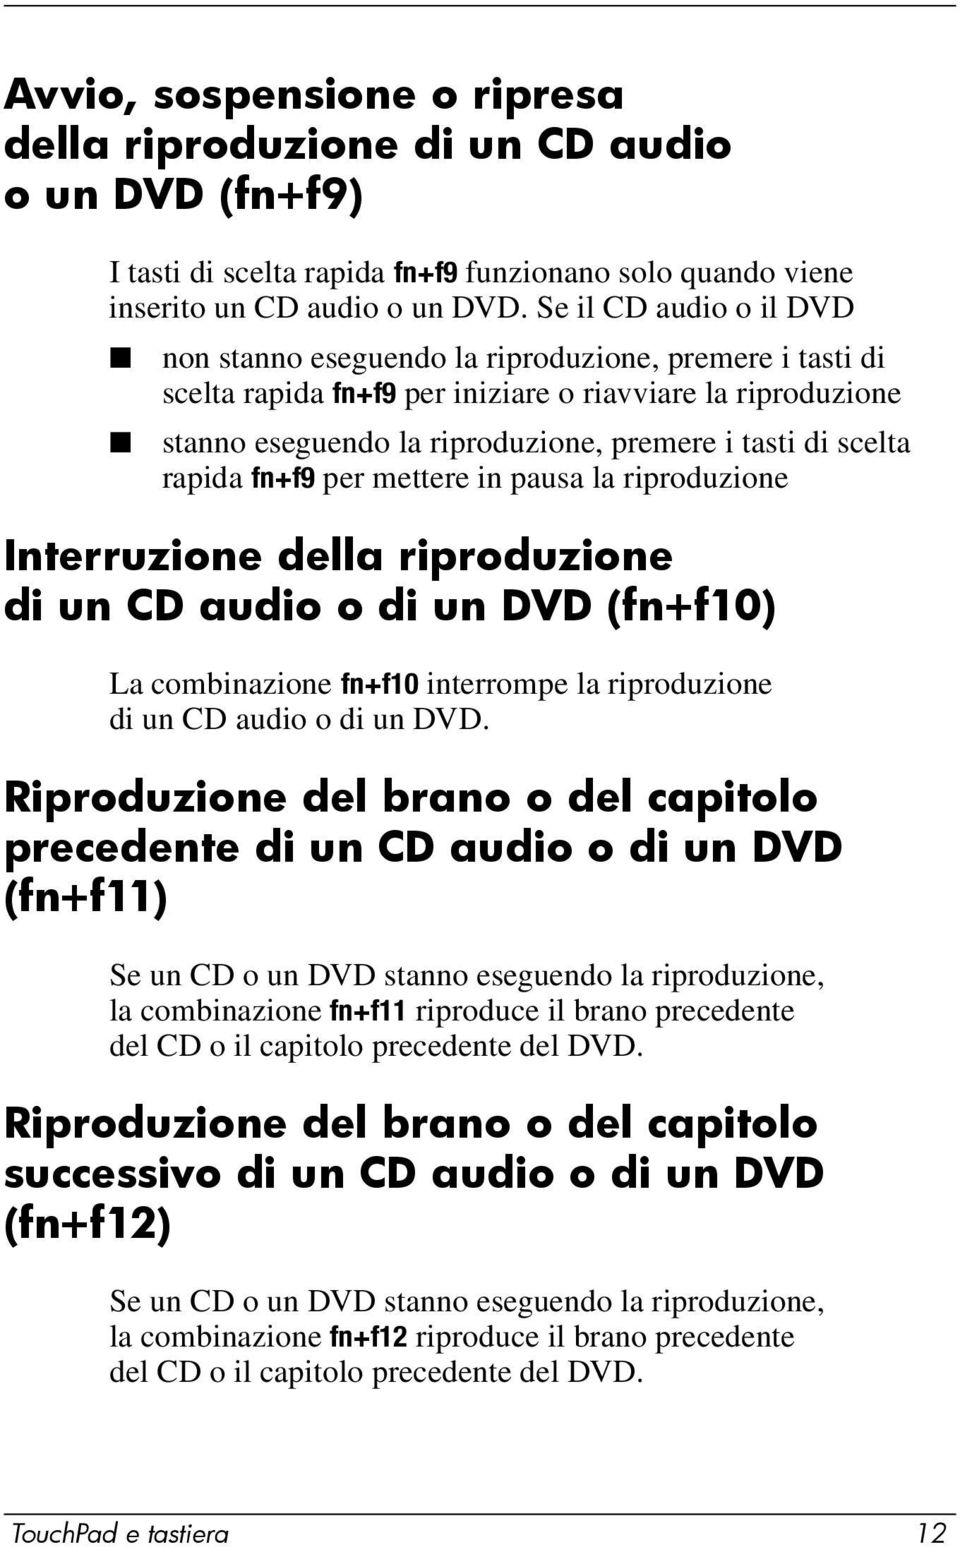 scelta rapida fn+f9 per mettere in pausa la riproduzione Interruzione della riproduzione di un CD audio o di un DVD (fn+f10) La combinazione fn+f10 interrompe la riproduzione di un CD audio o di un